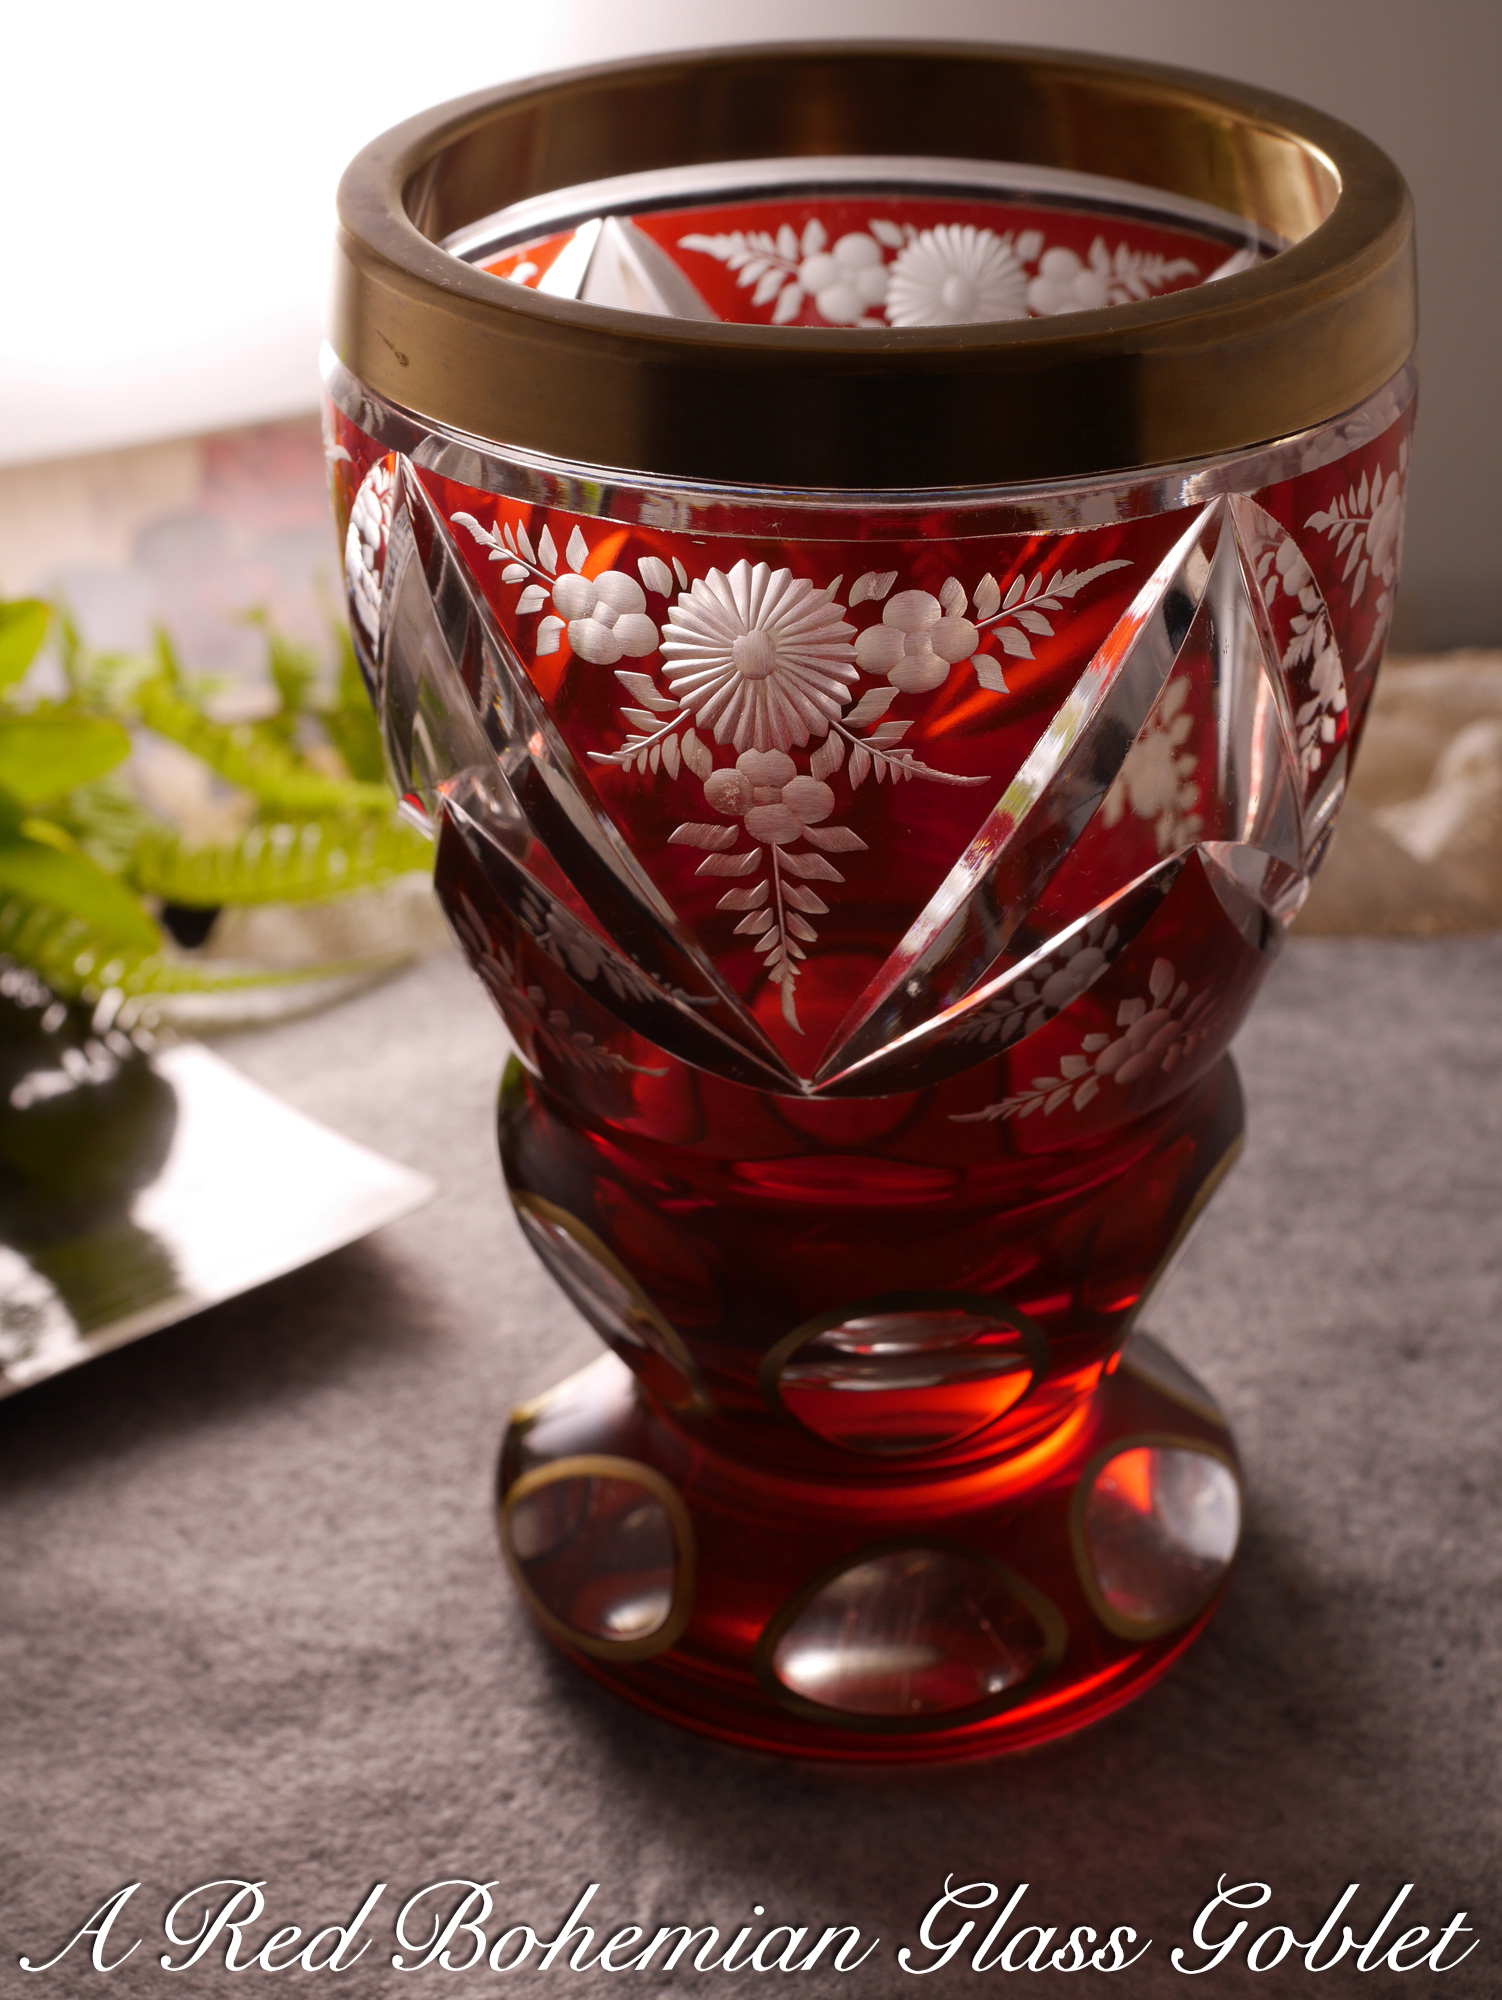 赤いボヘミアガラスのゴブレット (19世紀 チェコ) - Burghley Antiques